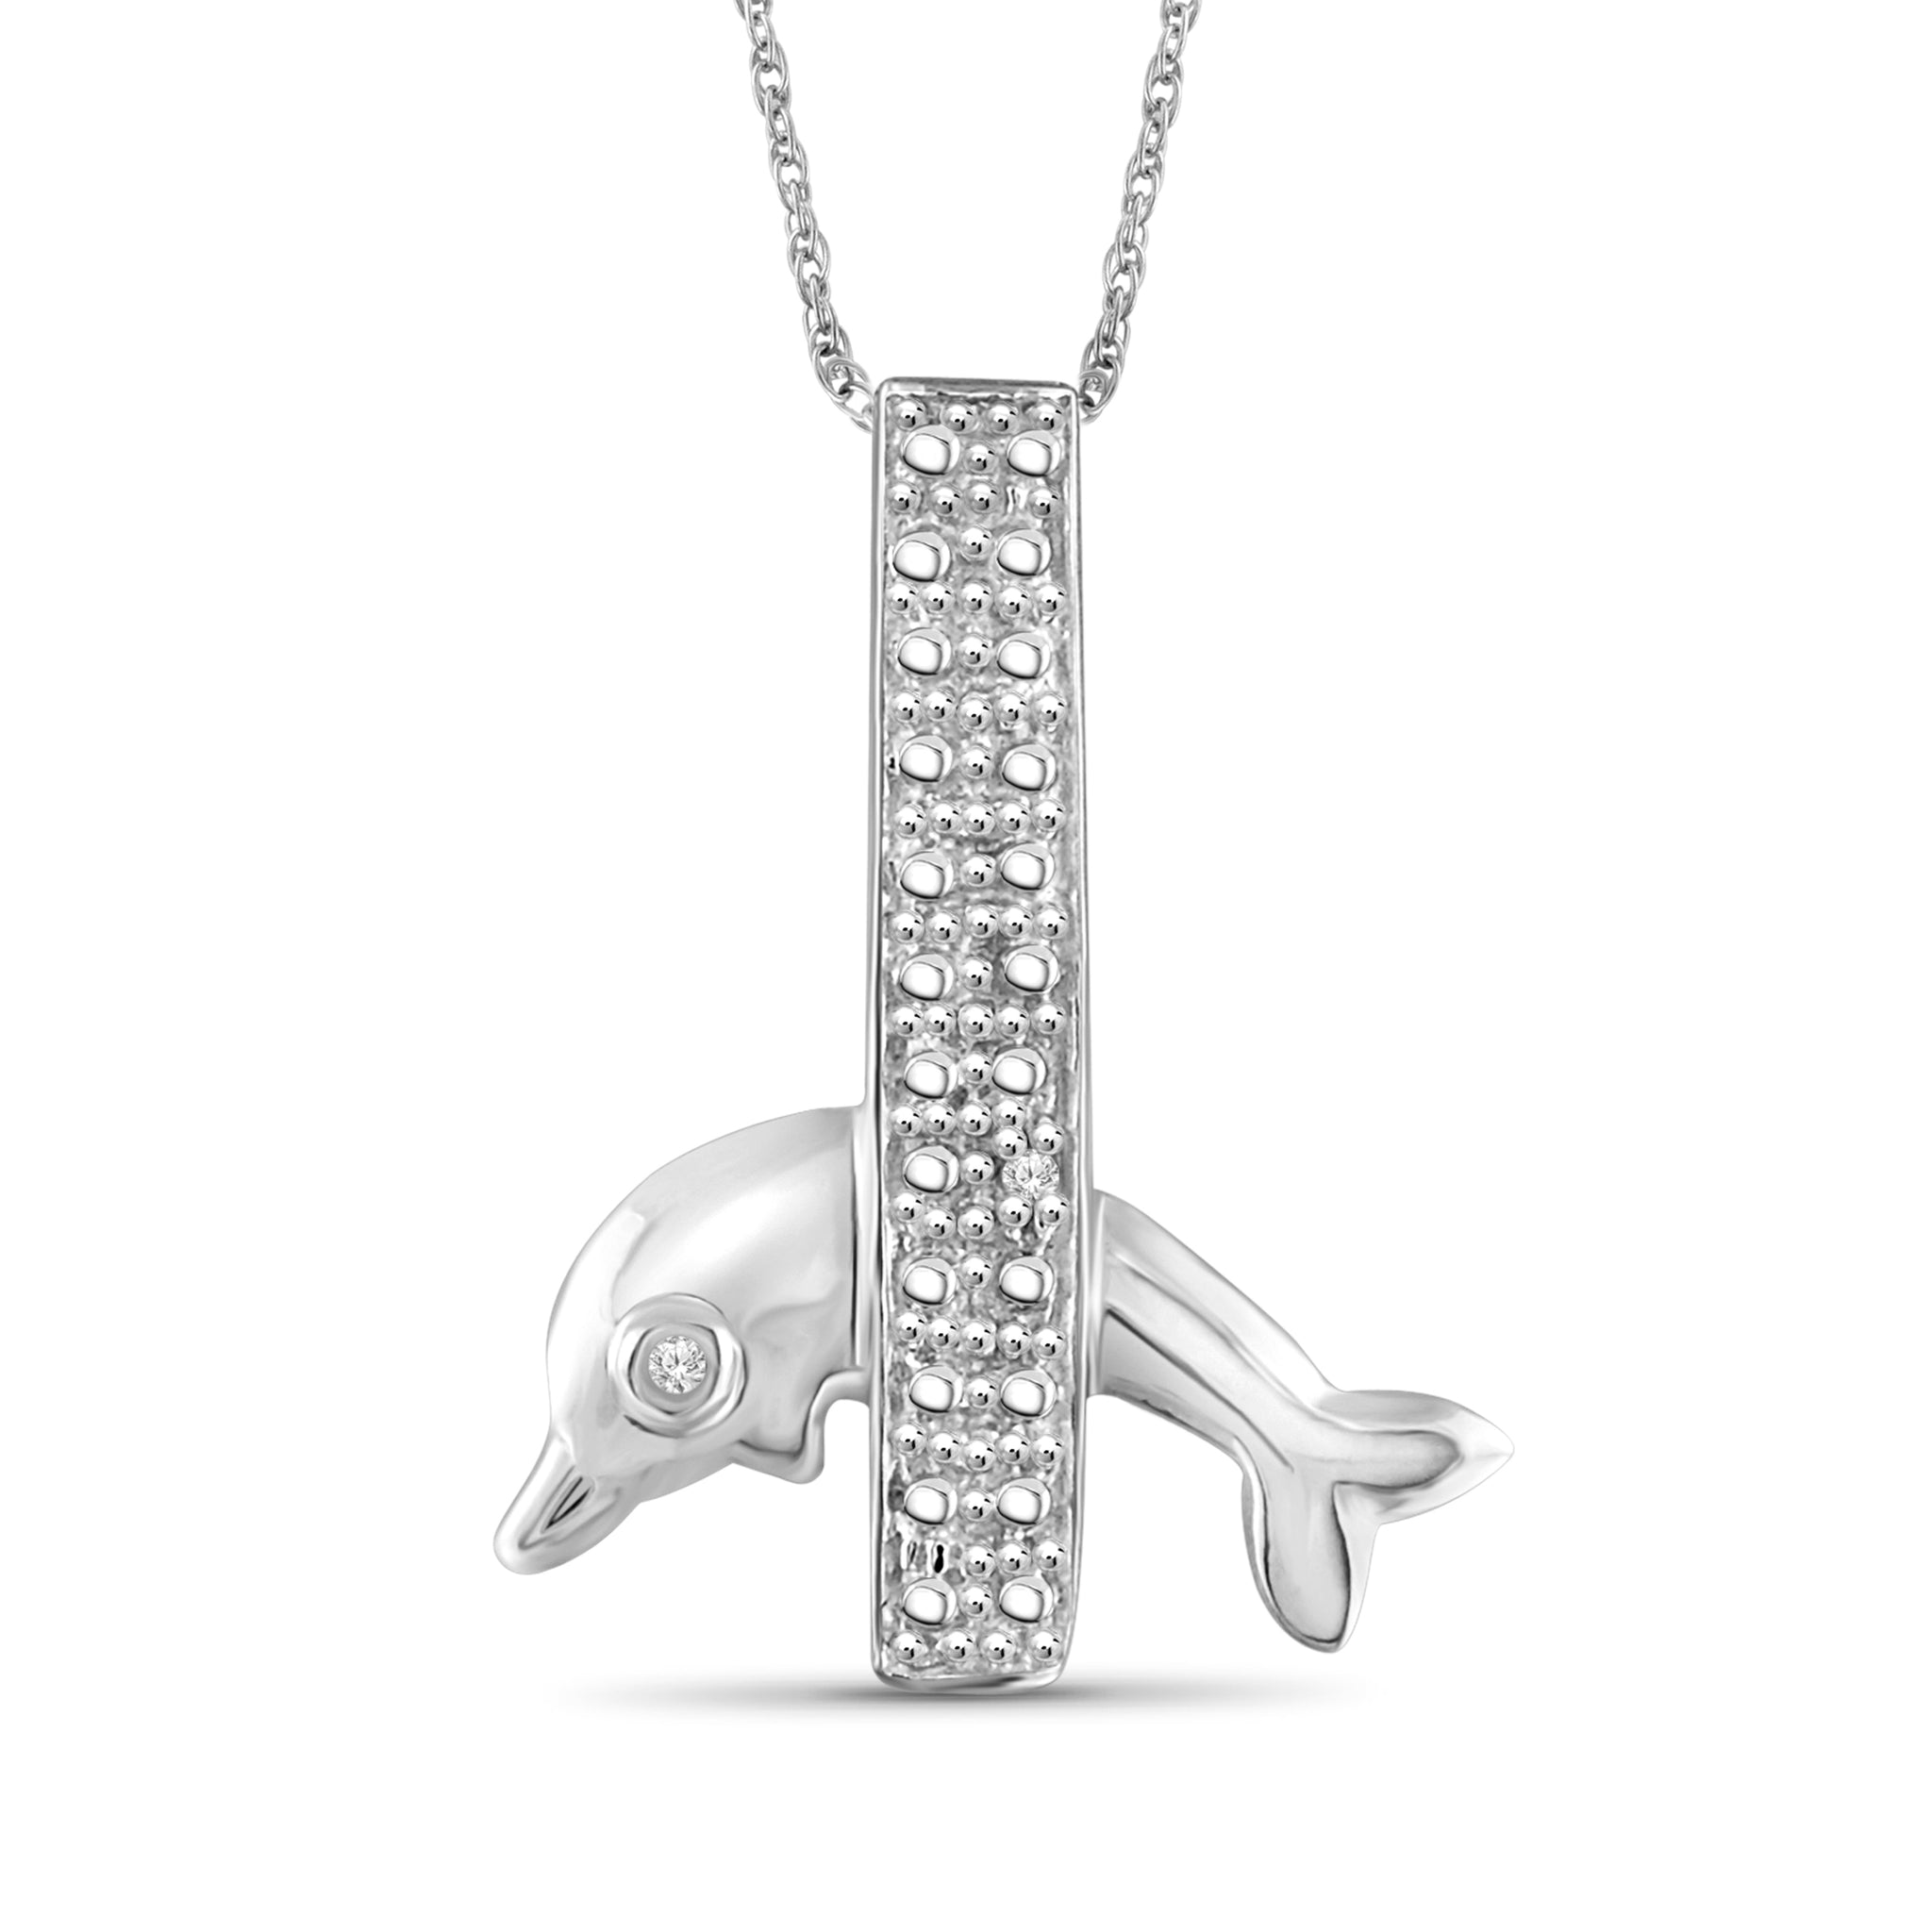 JewelonFire Accent White Diamond Fish Pendant in Sterling Silver